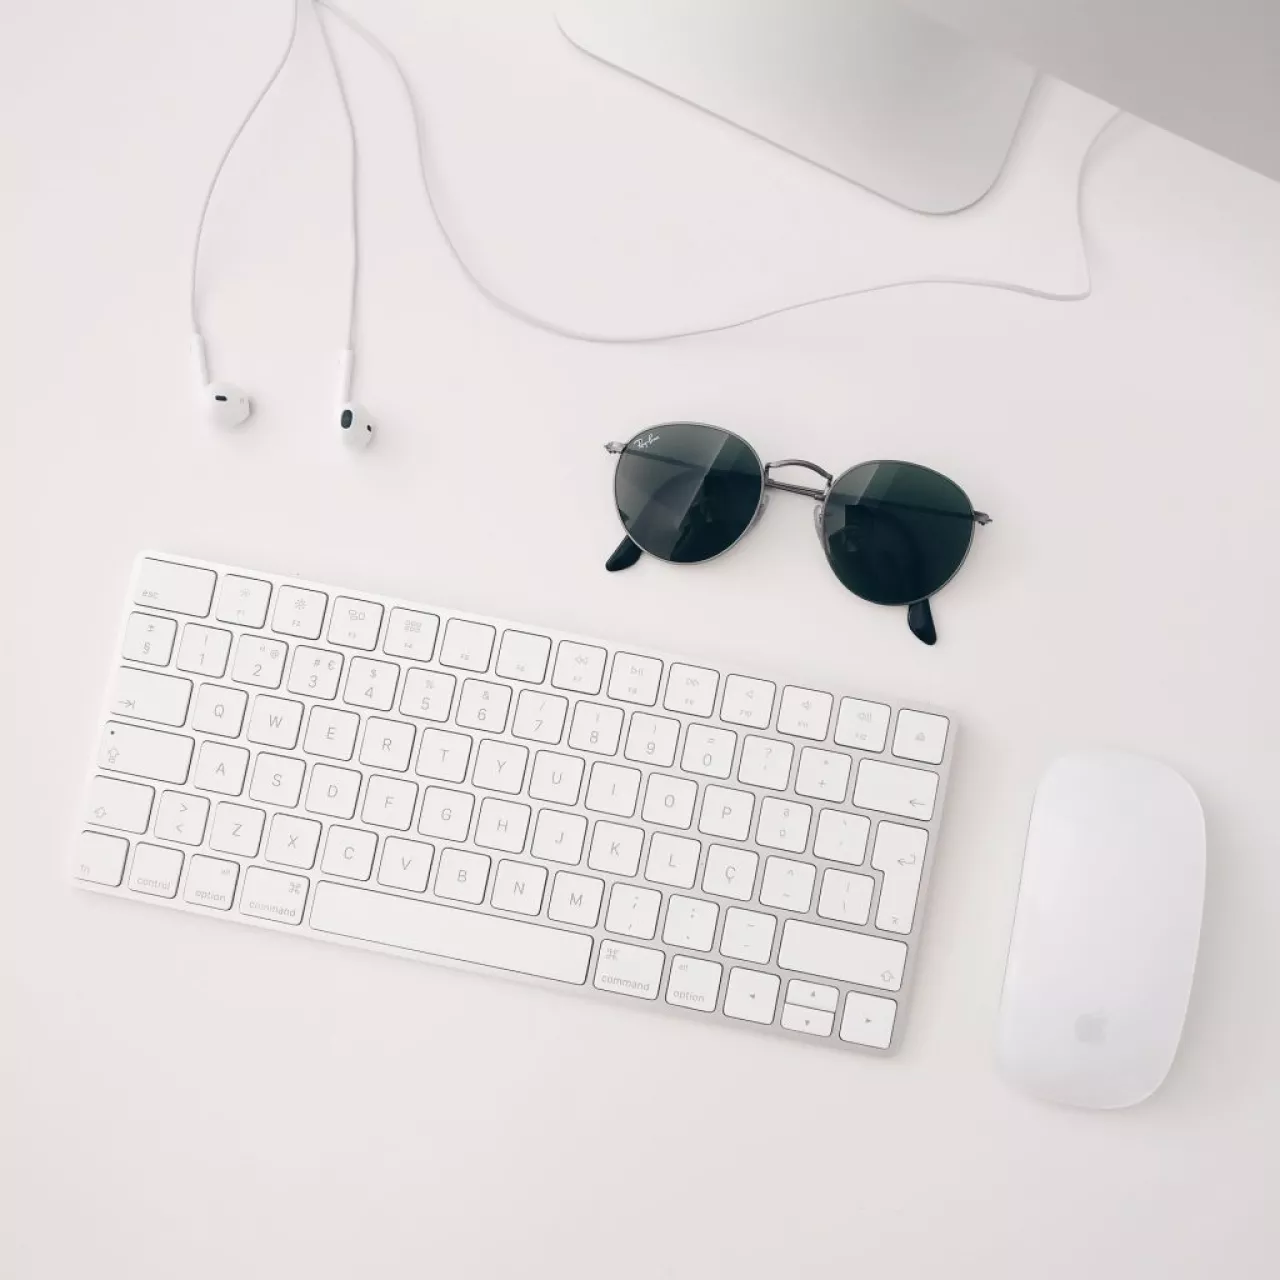 klávesnica a biela myš